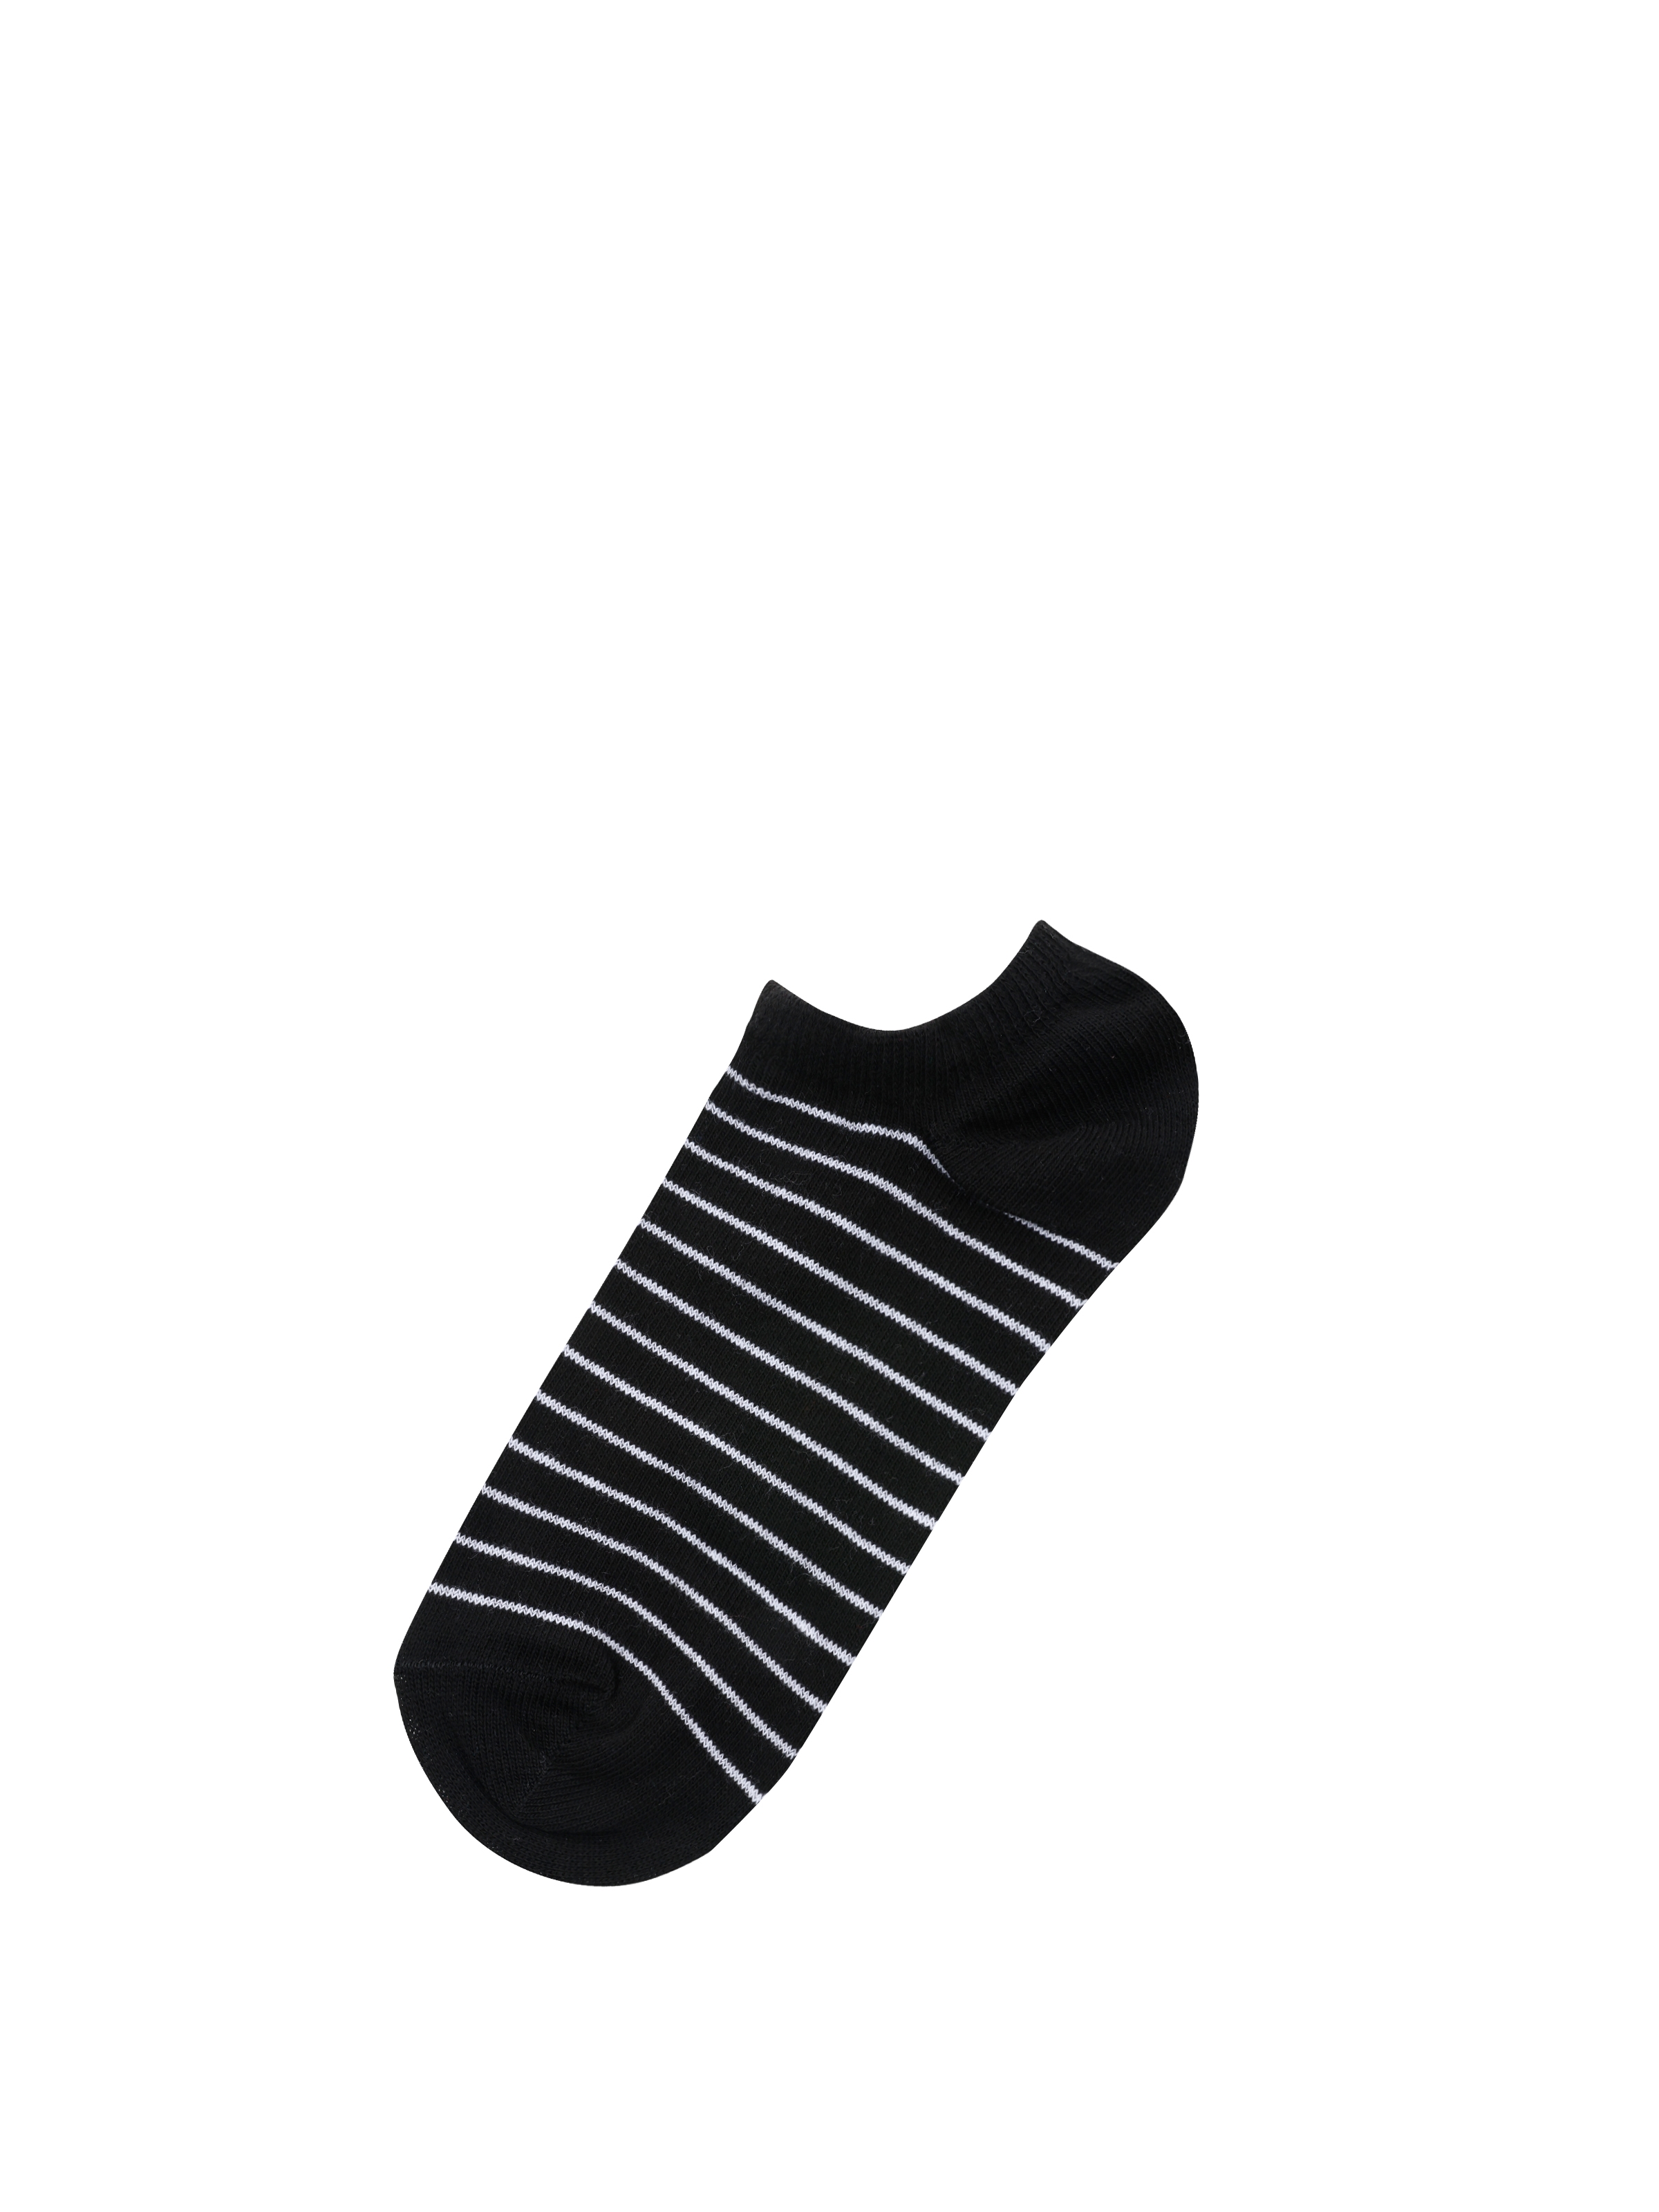 Показати інформацію про  Шкарпетки Жіночі Чорні  